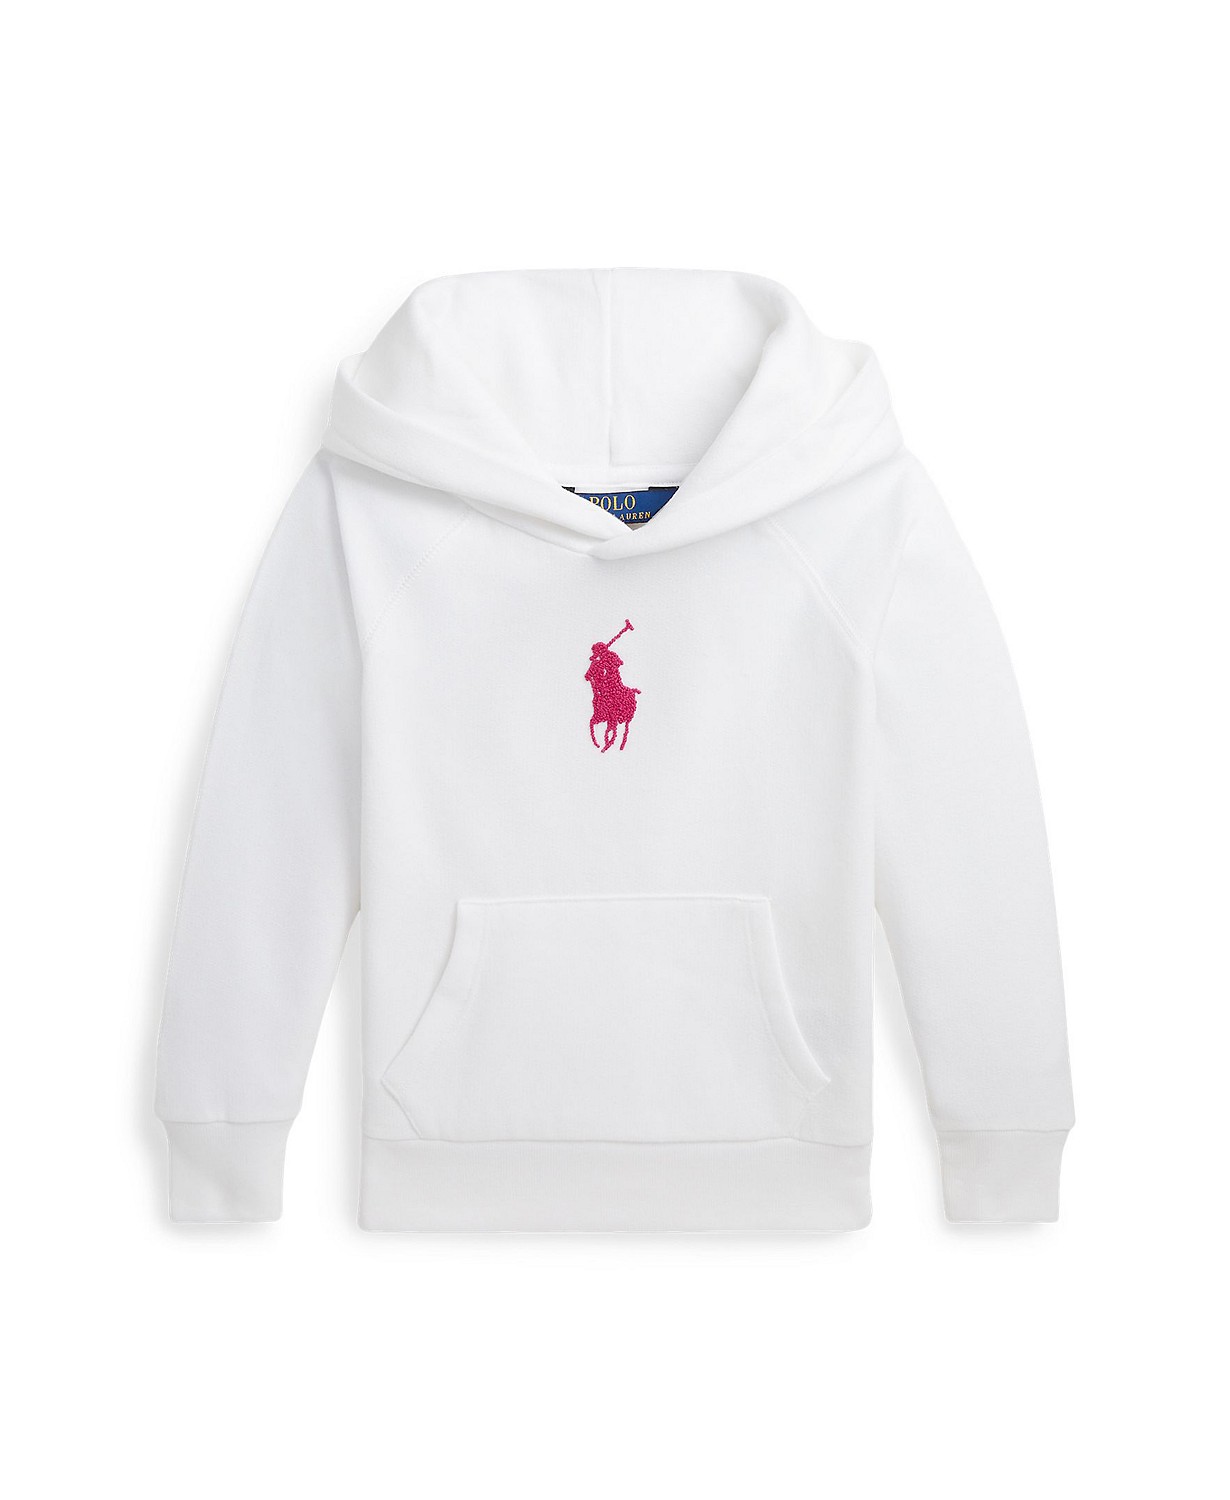 Toddler and Little Girls French Knot Big Pony Fleece Hooded Sweatshirt